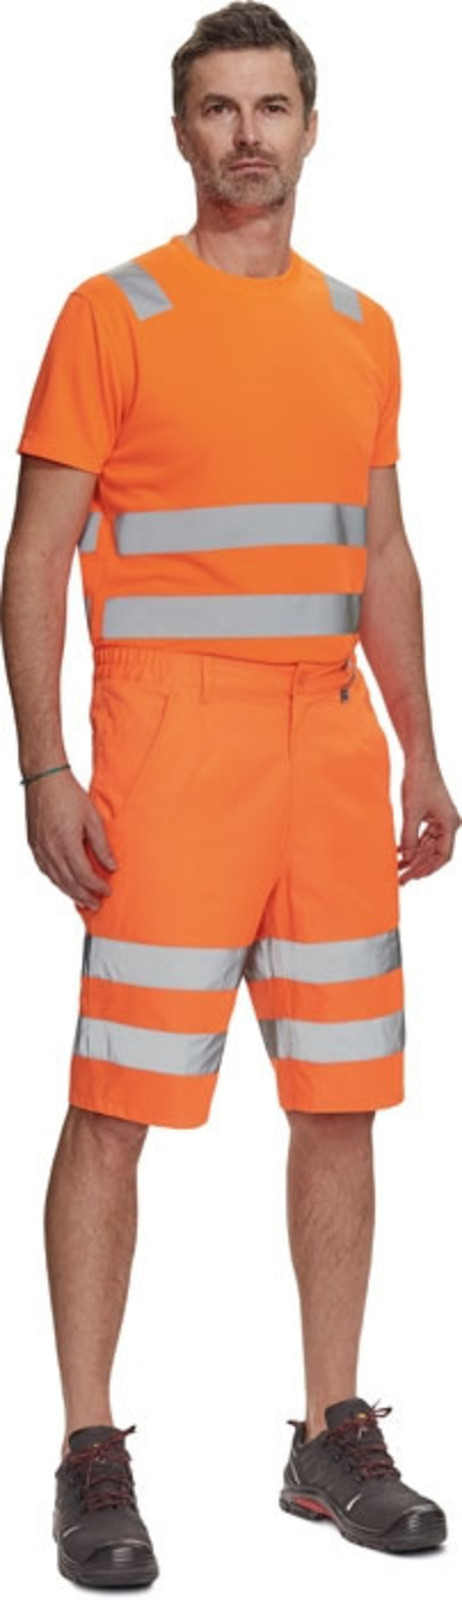 Pánske reflexné šortky Cerva Ciudades Ferrol HV - veľkosť: 48, farba: oranžová